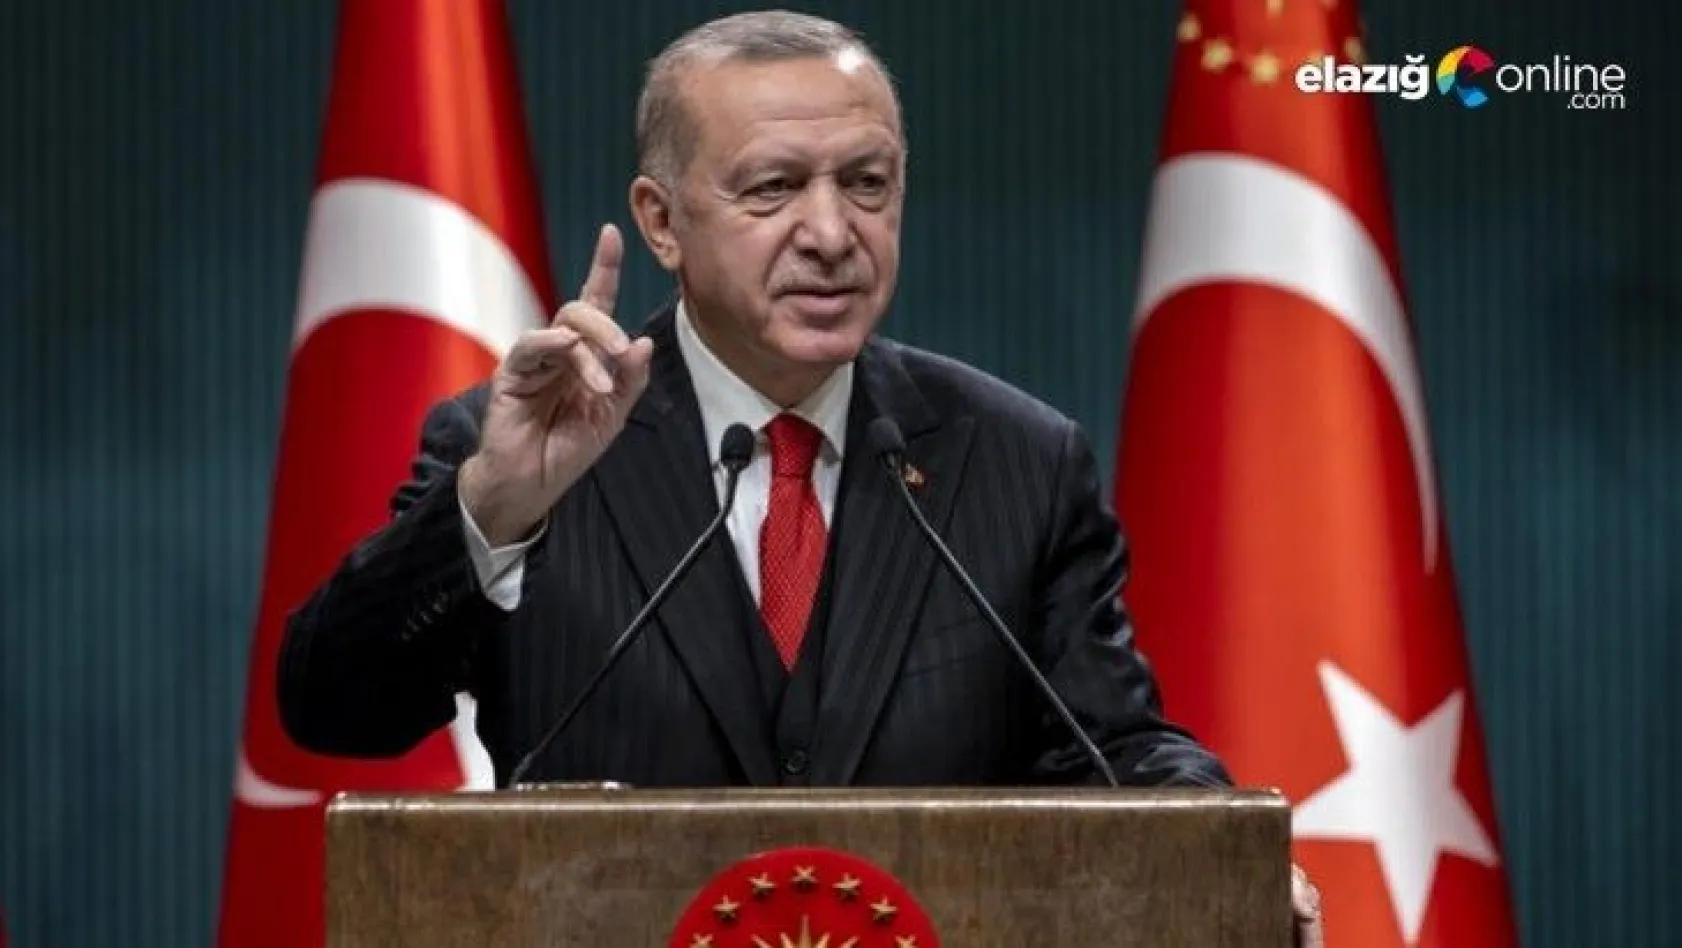 Cumhurbaşkanı Erdoğan: Kılıçdaroğlu gaza geldi